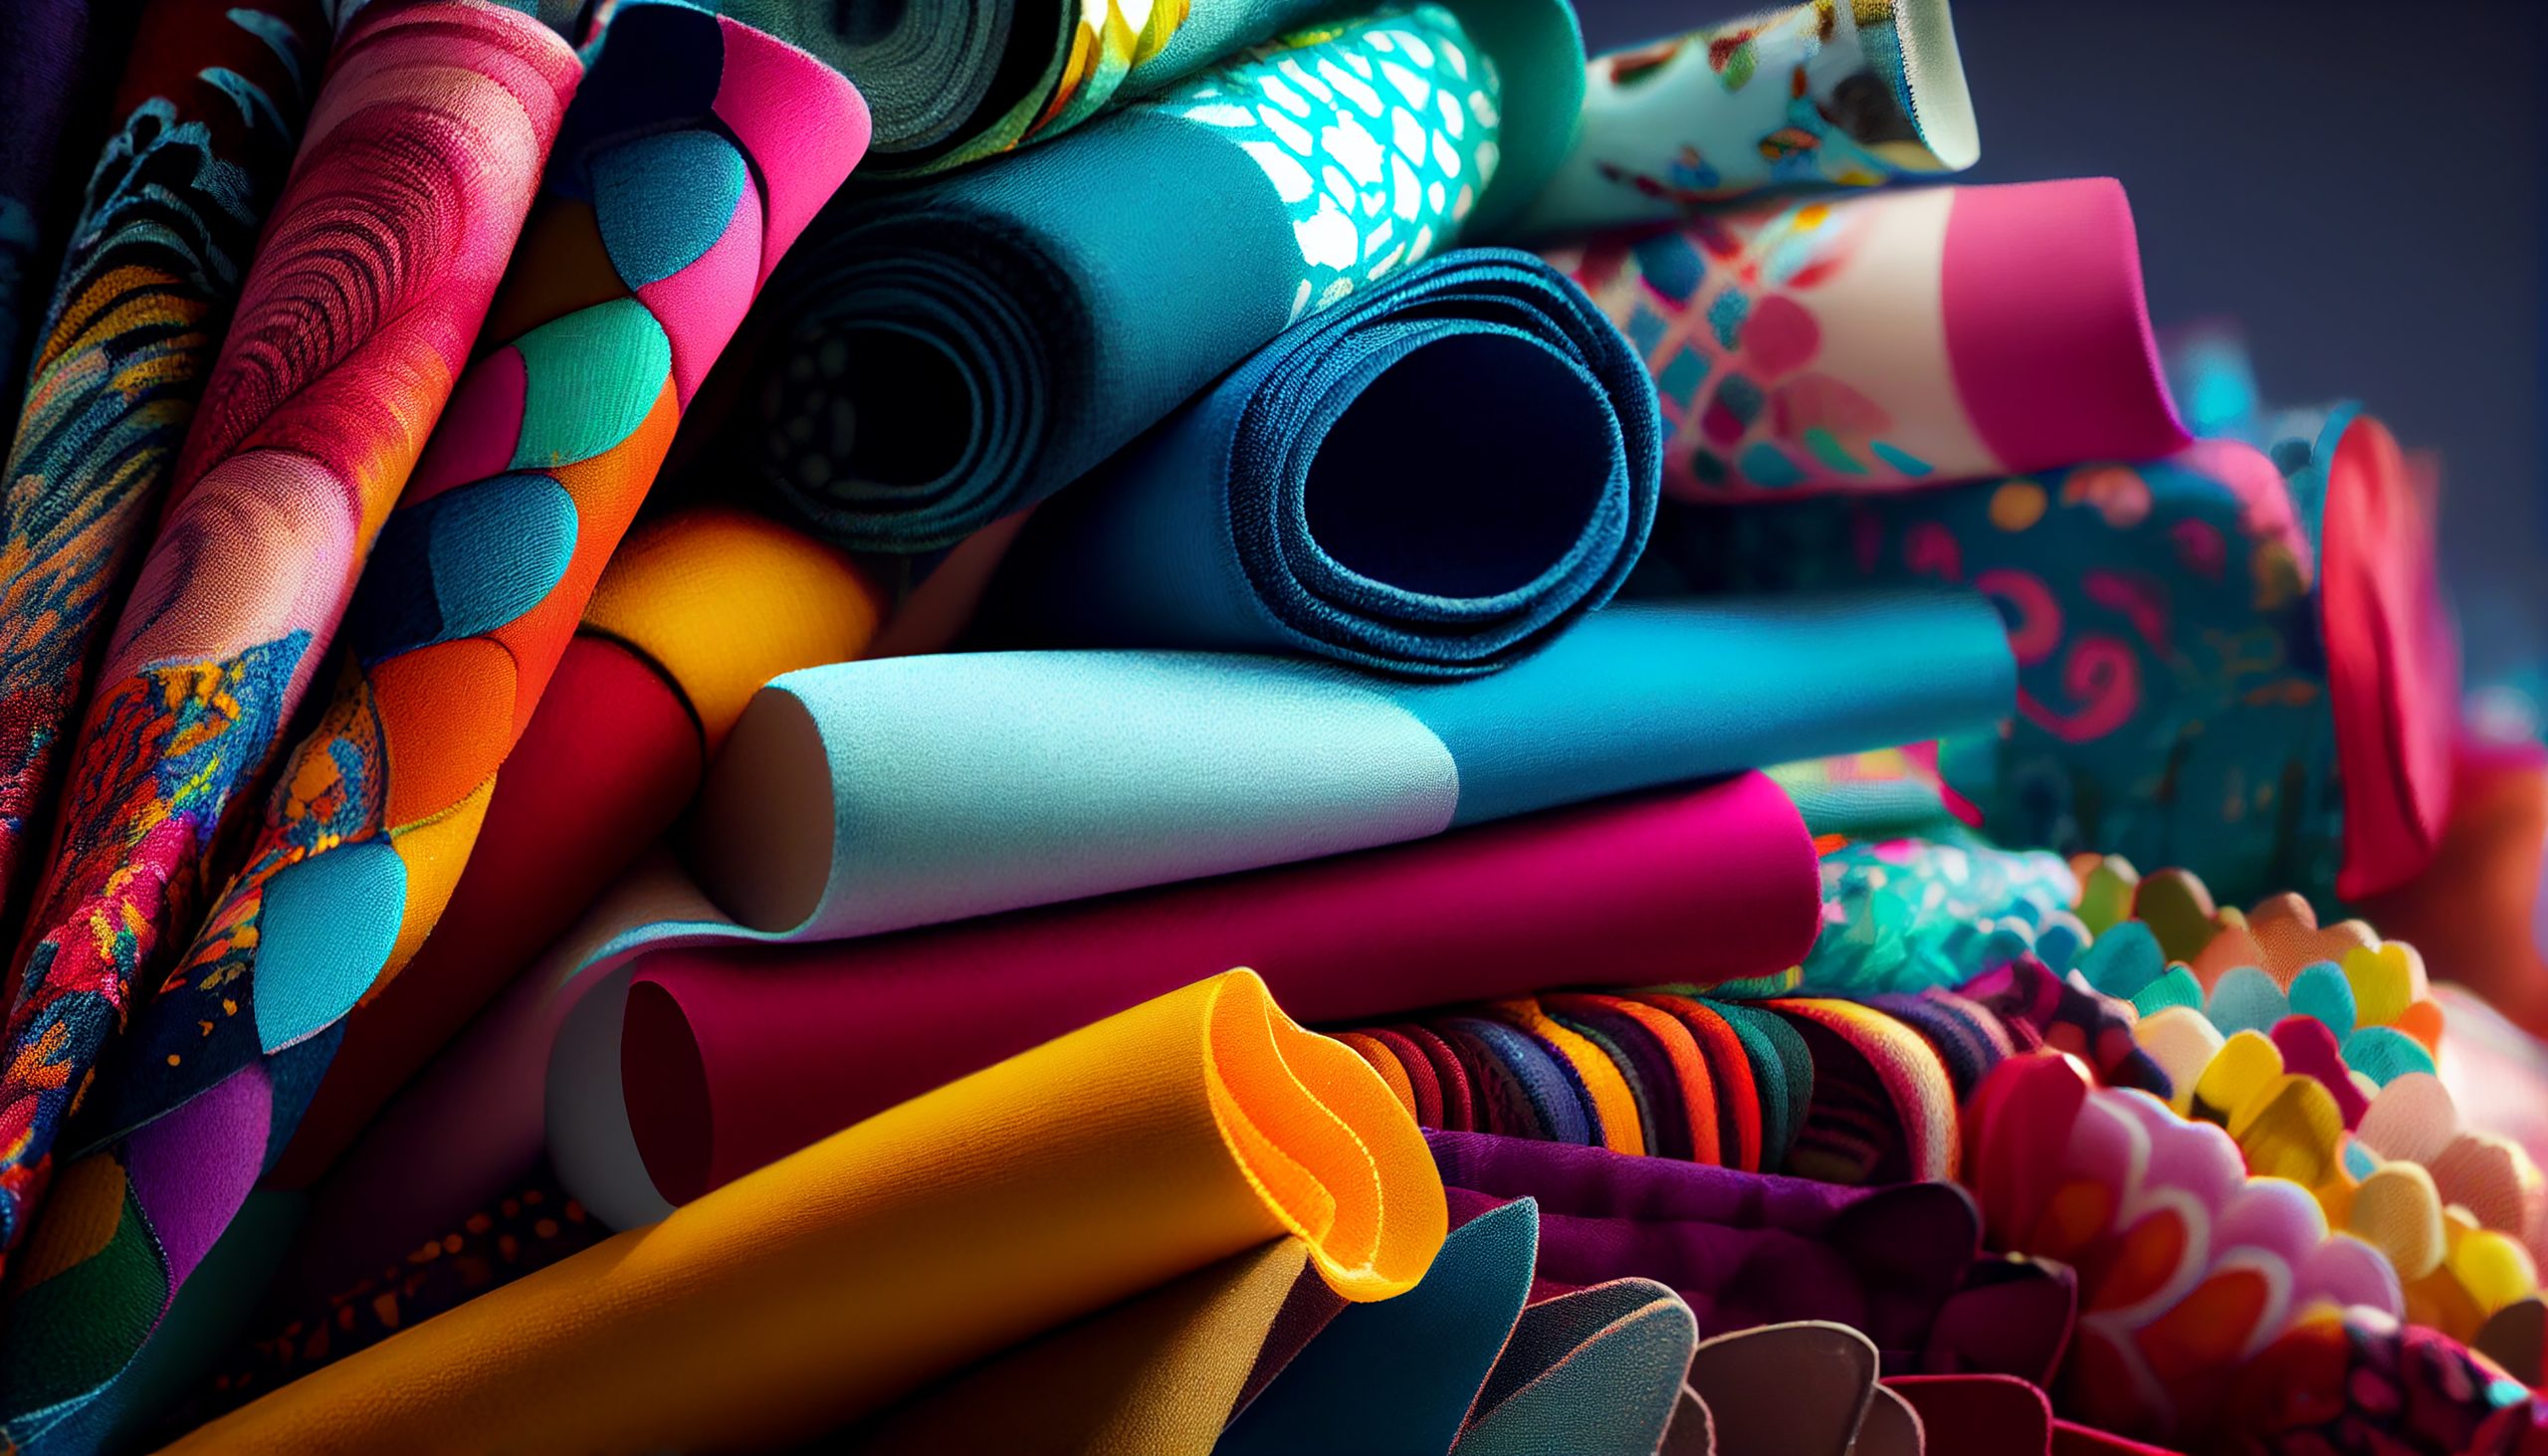 In calo i prodotti tessili riciclati, ma aumenta la produzione di fibre sostenibili